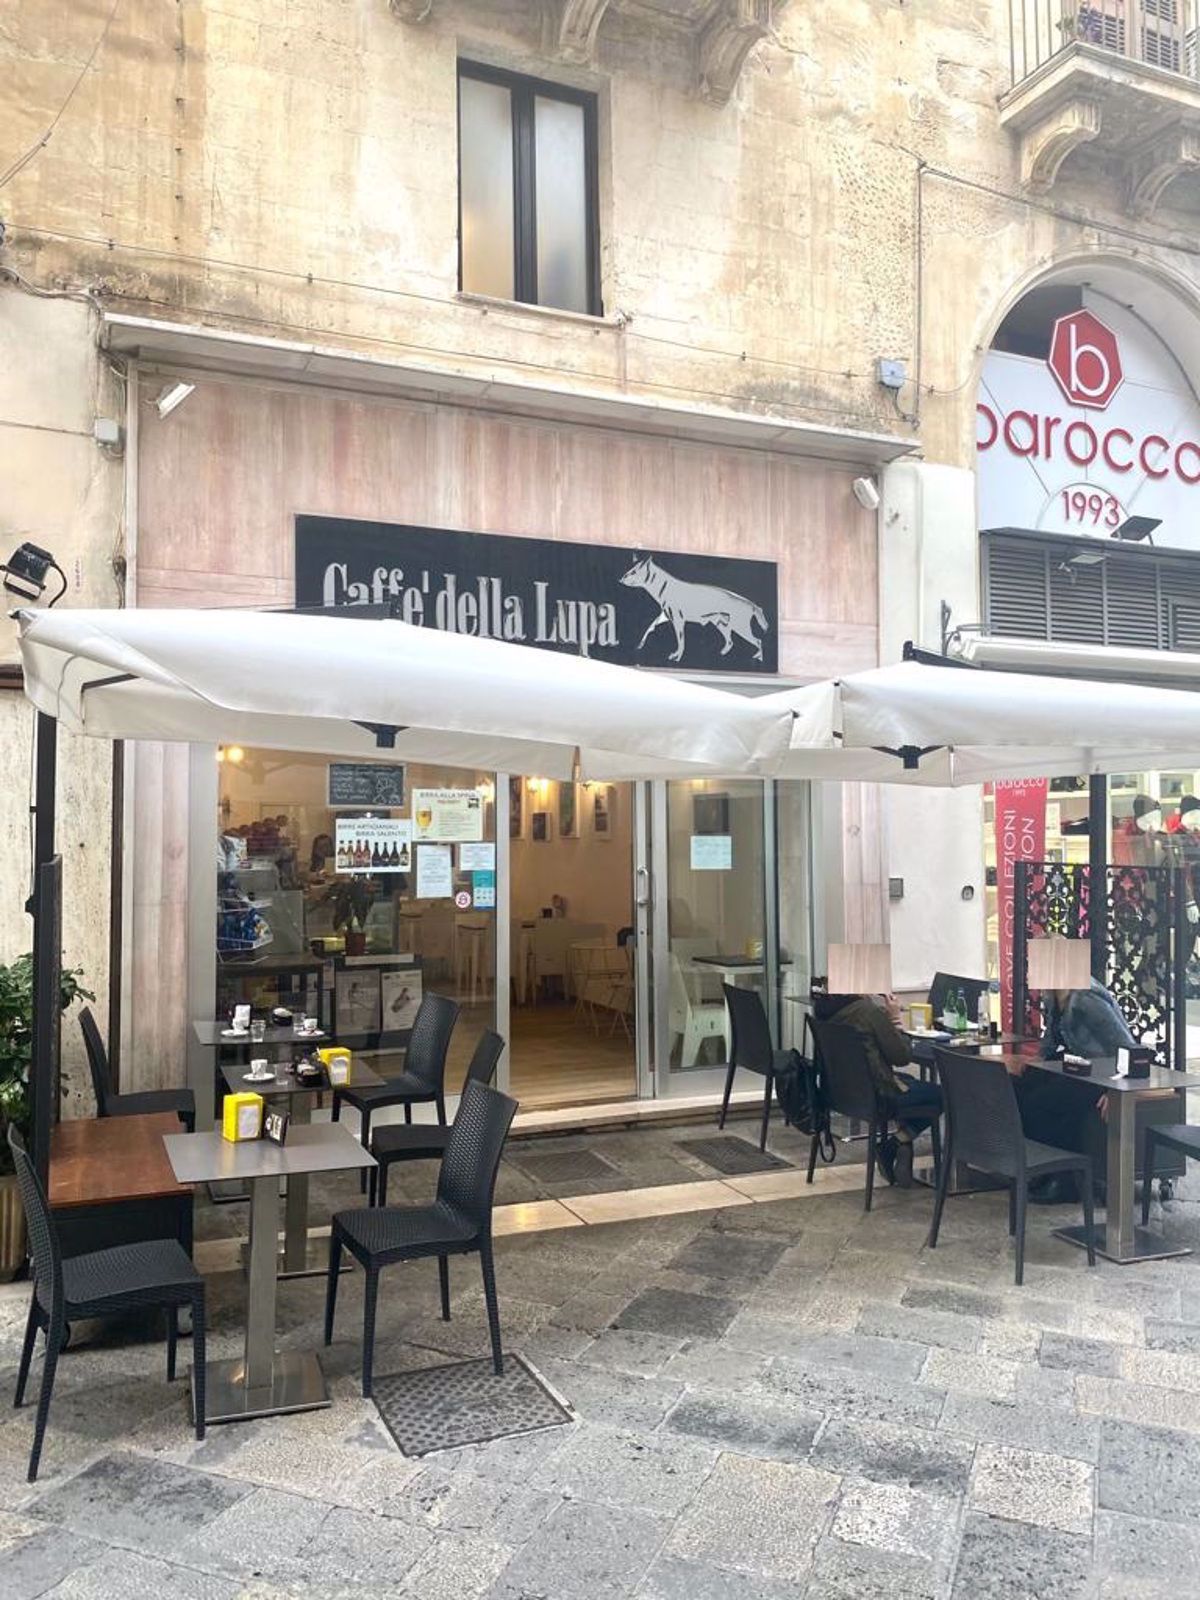 Vendita Attività  Commerciale Lecce